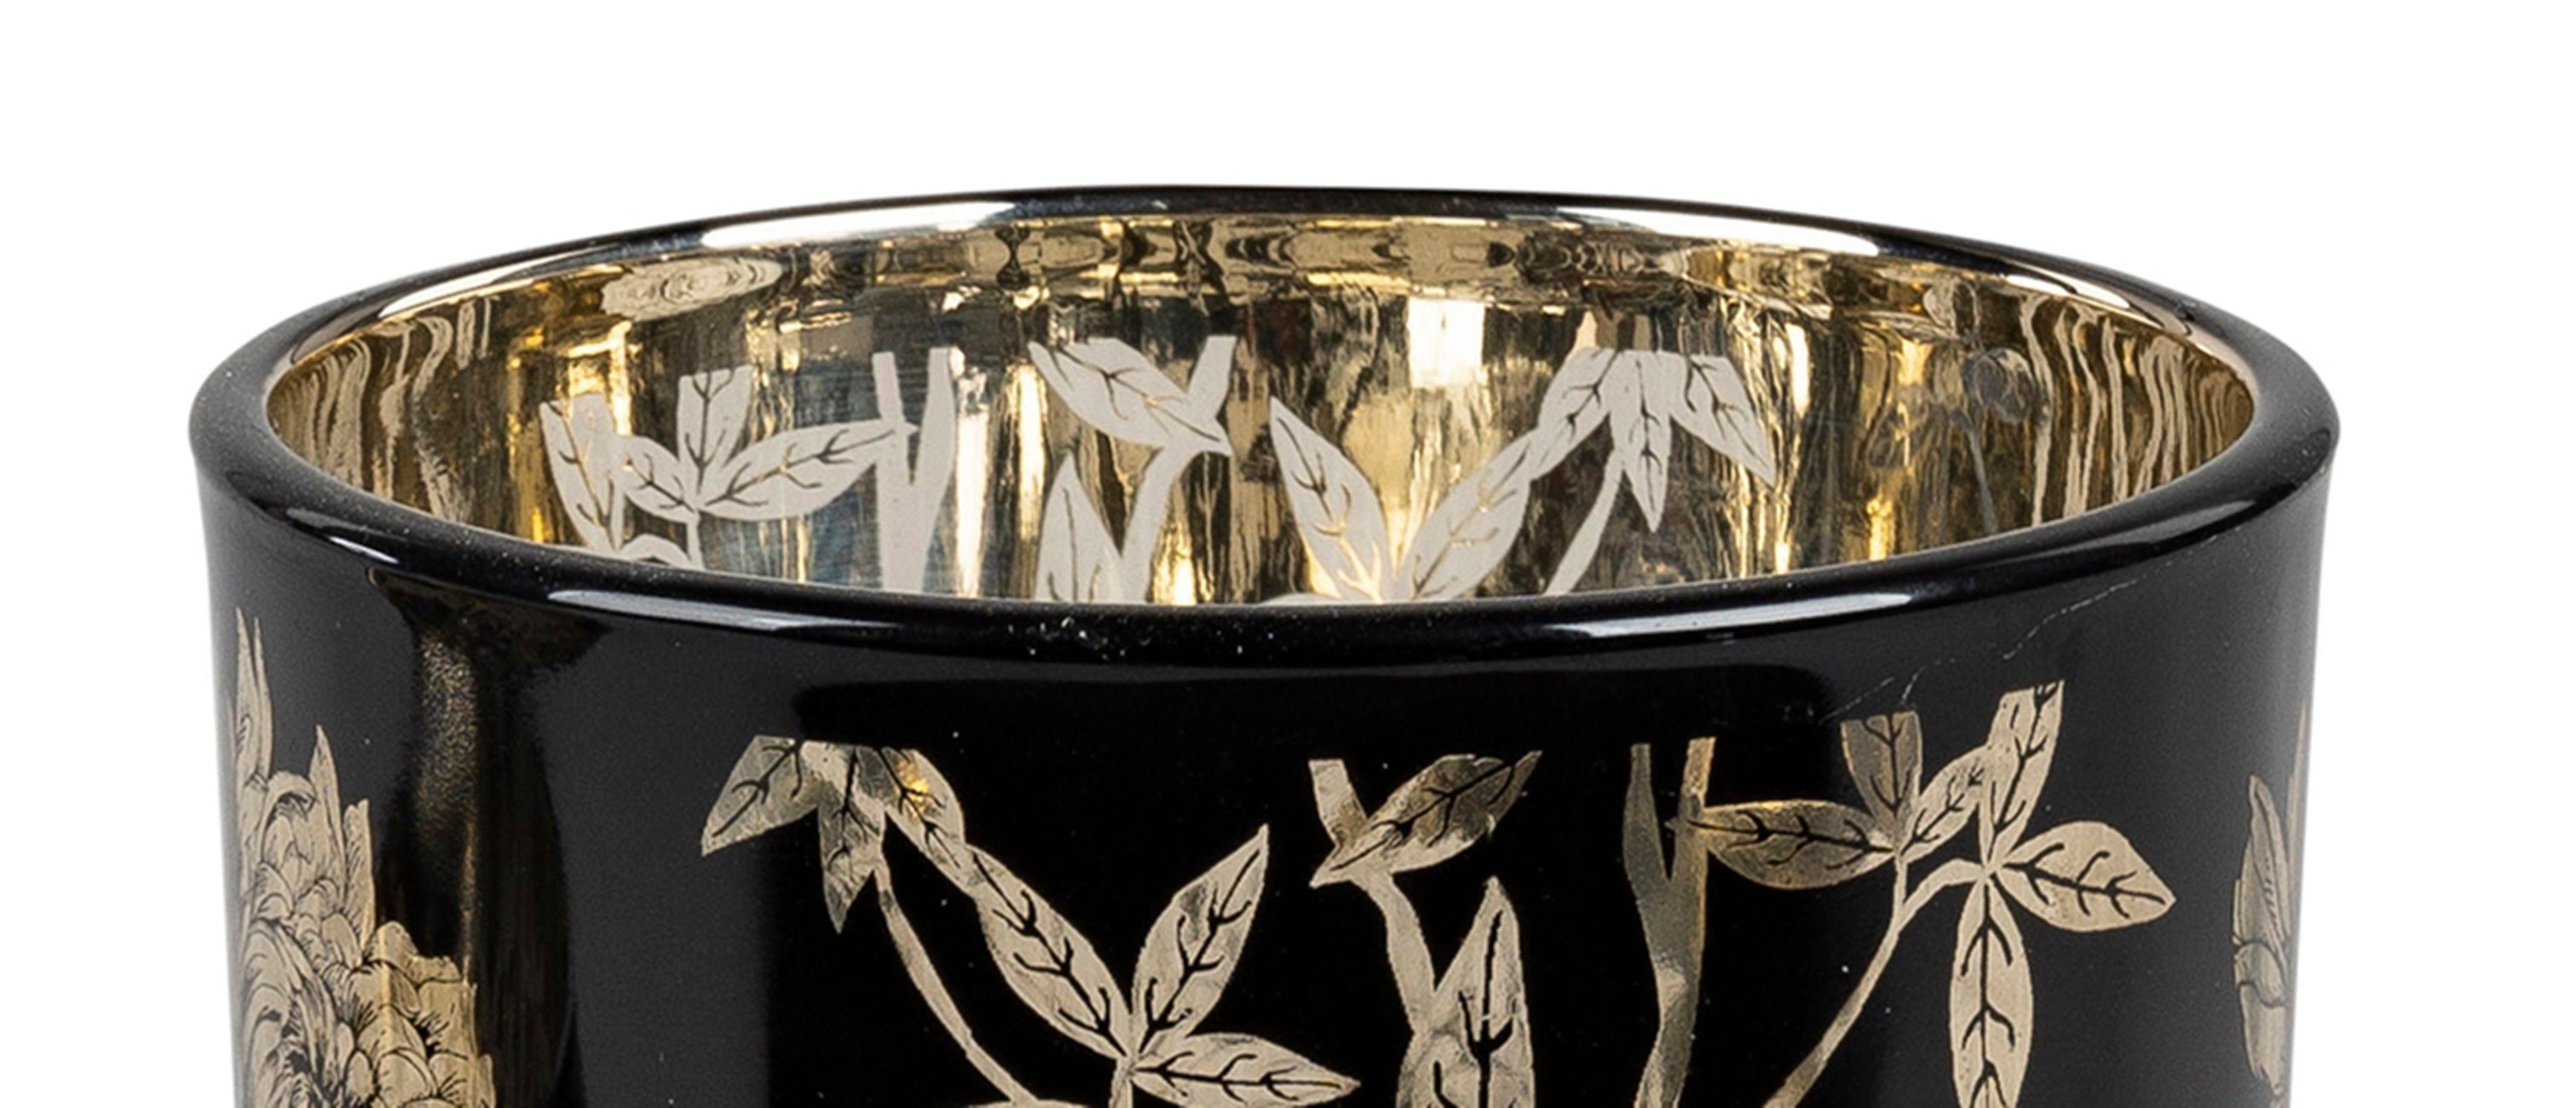 Windlicht Teelichthalter gold 13cm dekojohnson Windlichtglas schwarz